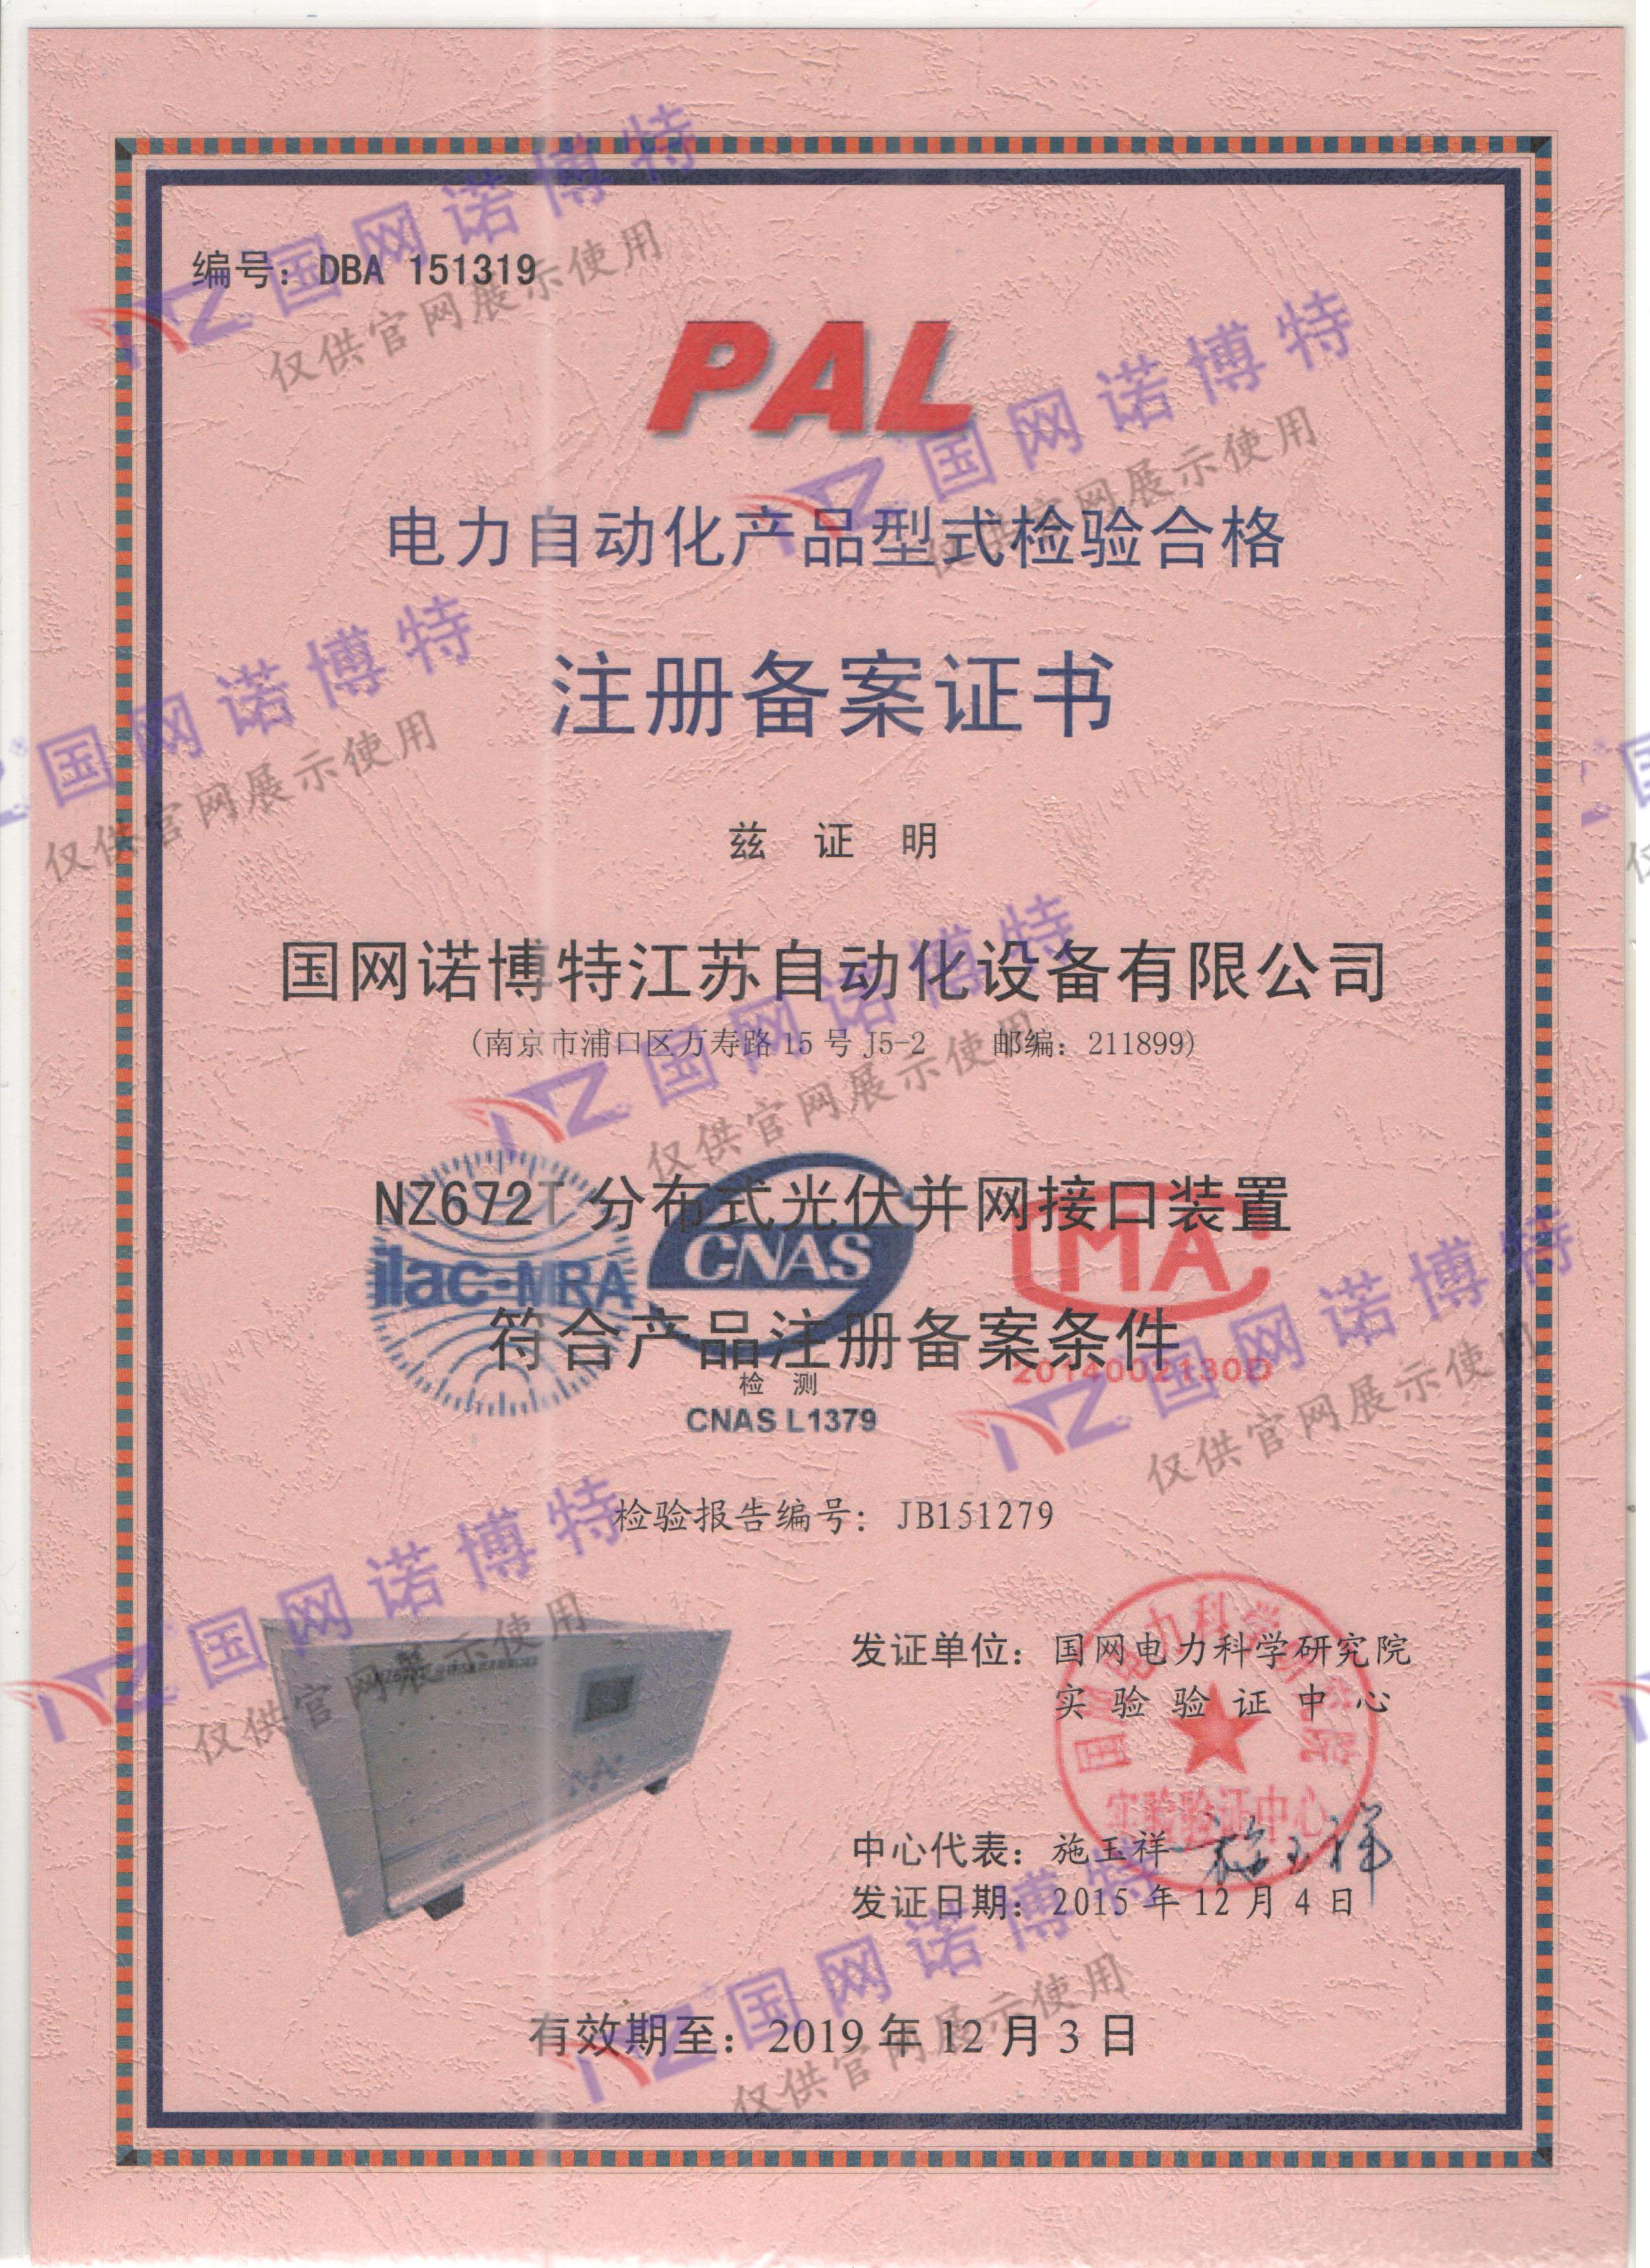 2019年-NZ672T PAL 证书